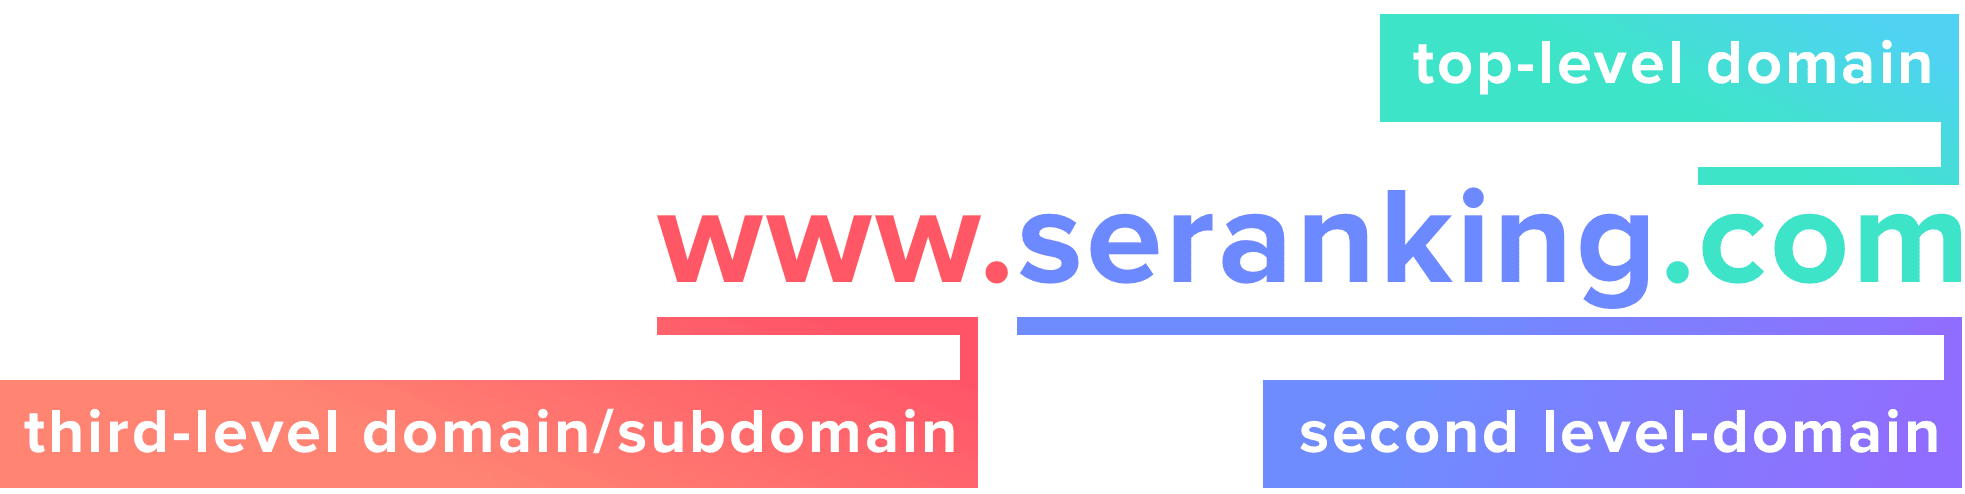 www-seranking-com-estrutura-dominio